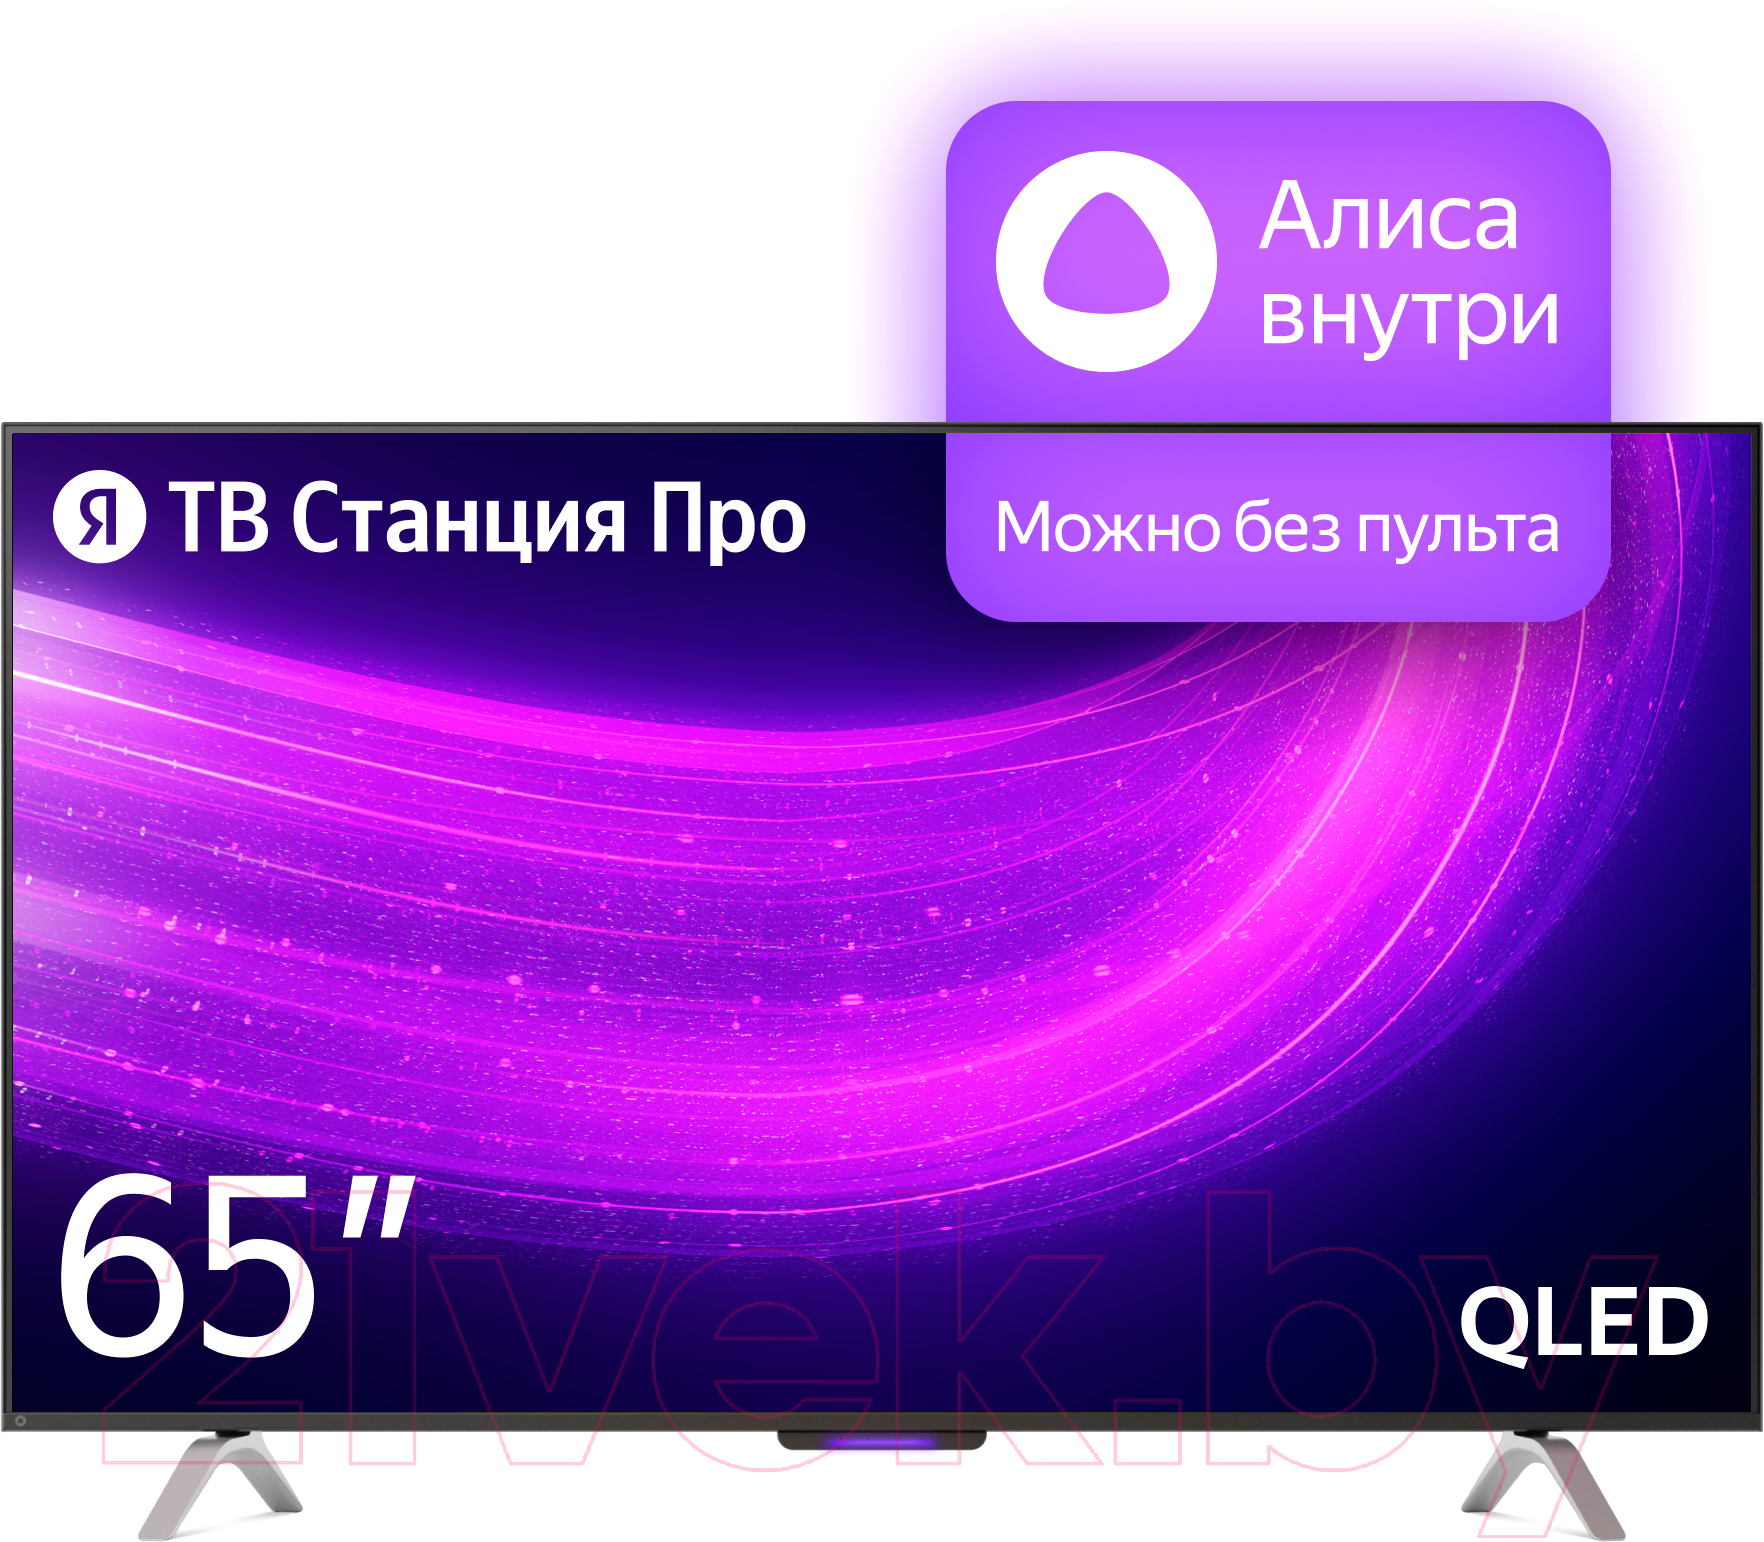 Телевизор Яндекс ТВ Станция Про с Алисой 65